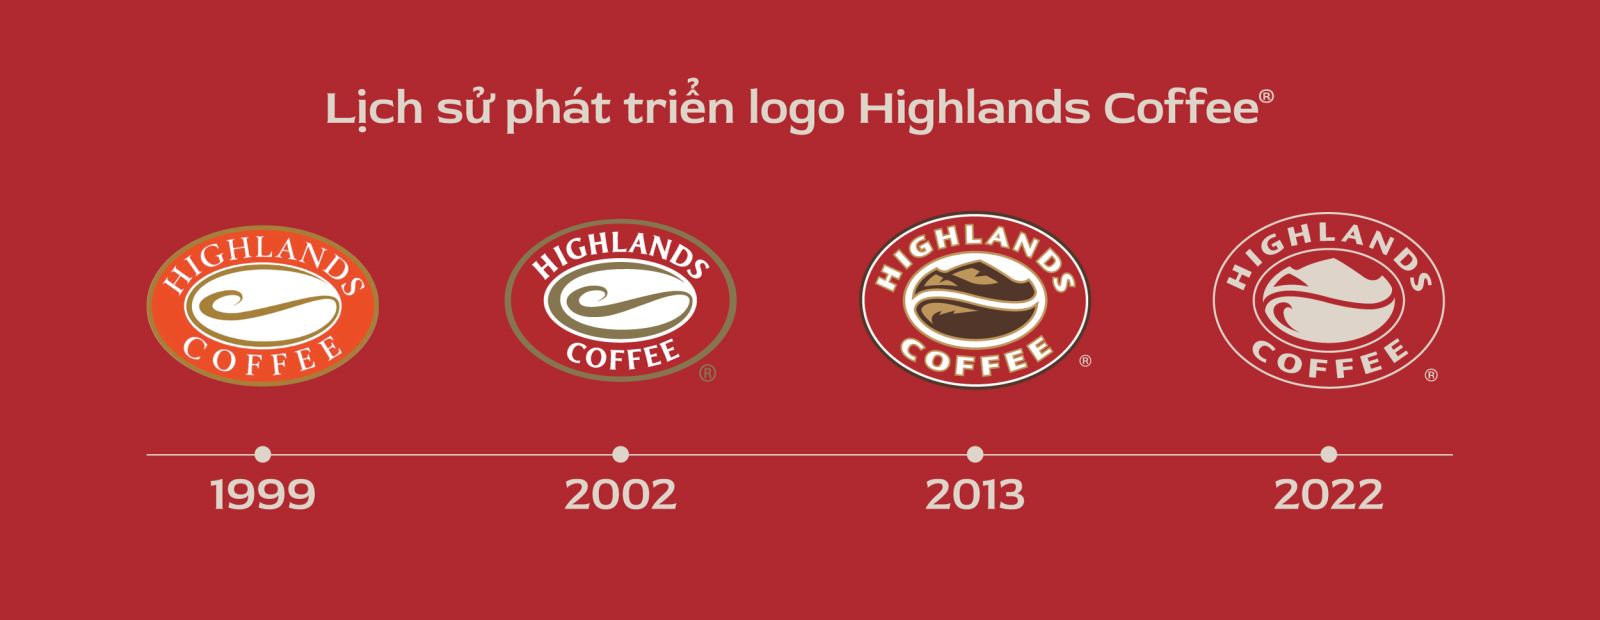 Highlands Coffee làm mới logo, ra mắt thông điệp hướng về cộng ...